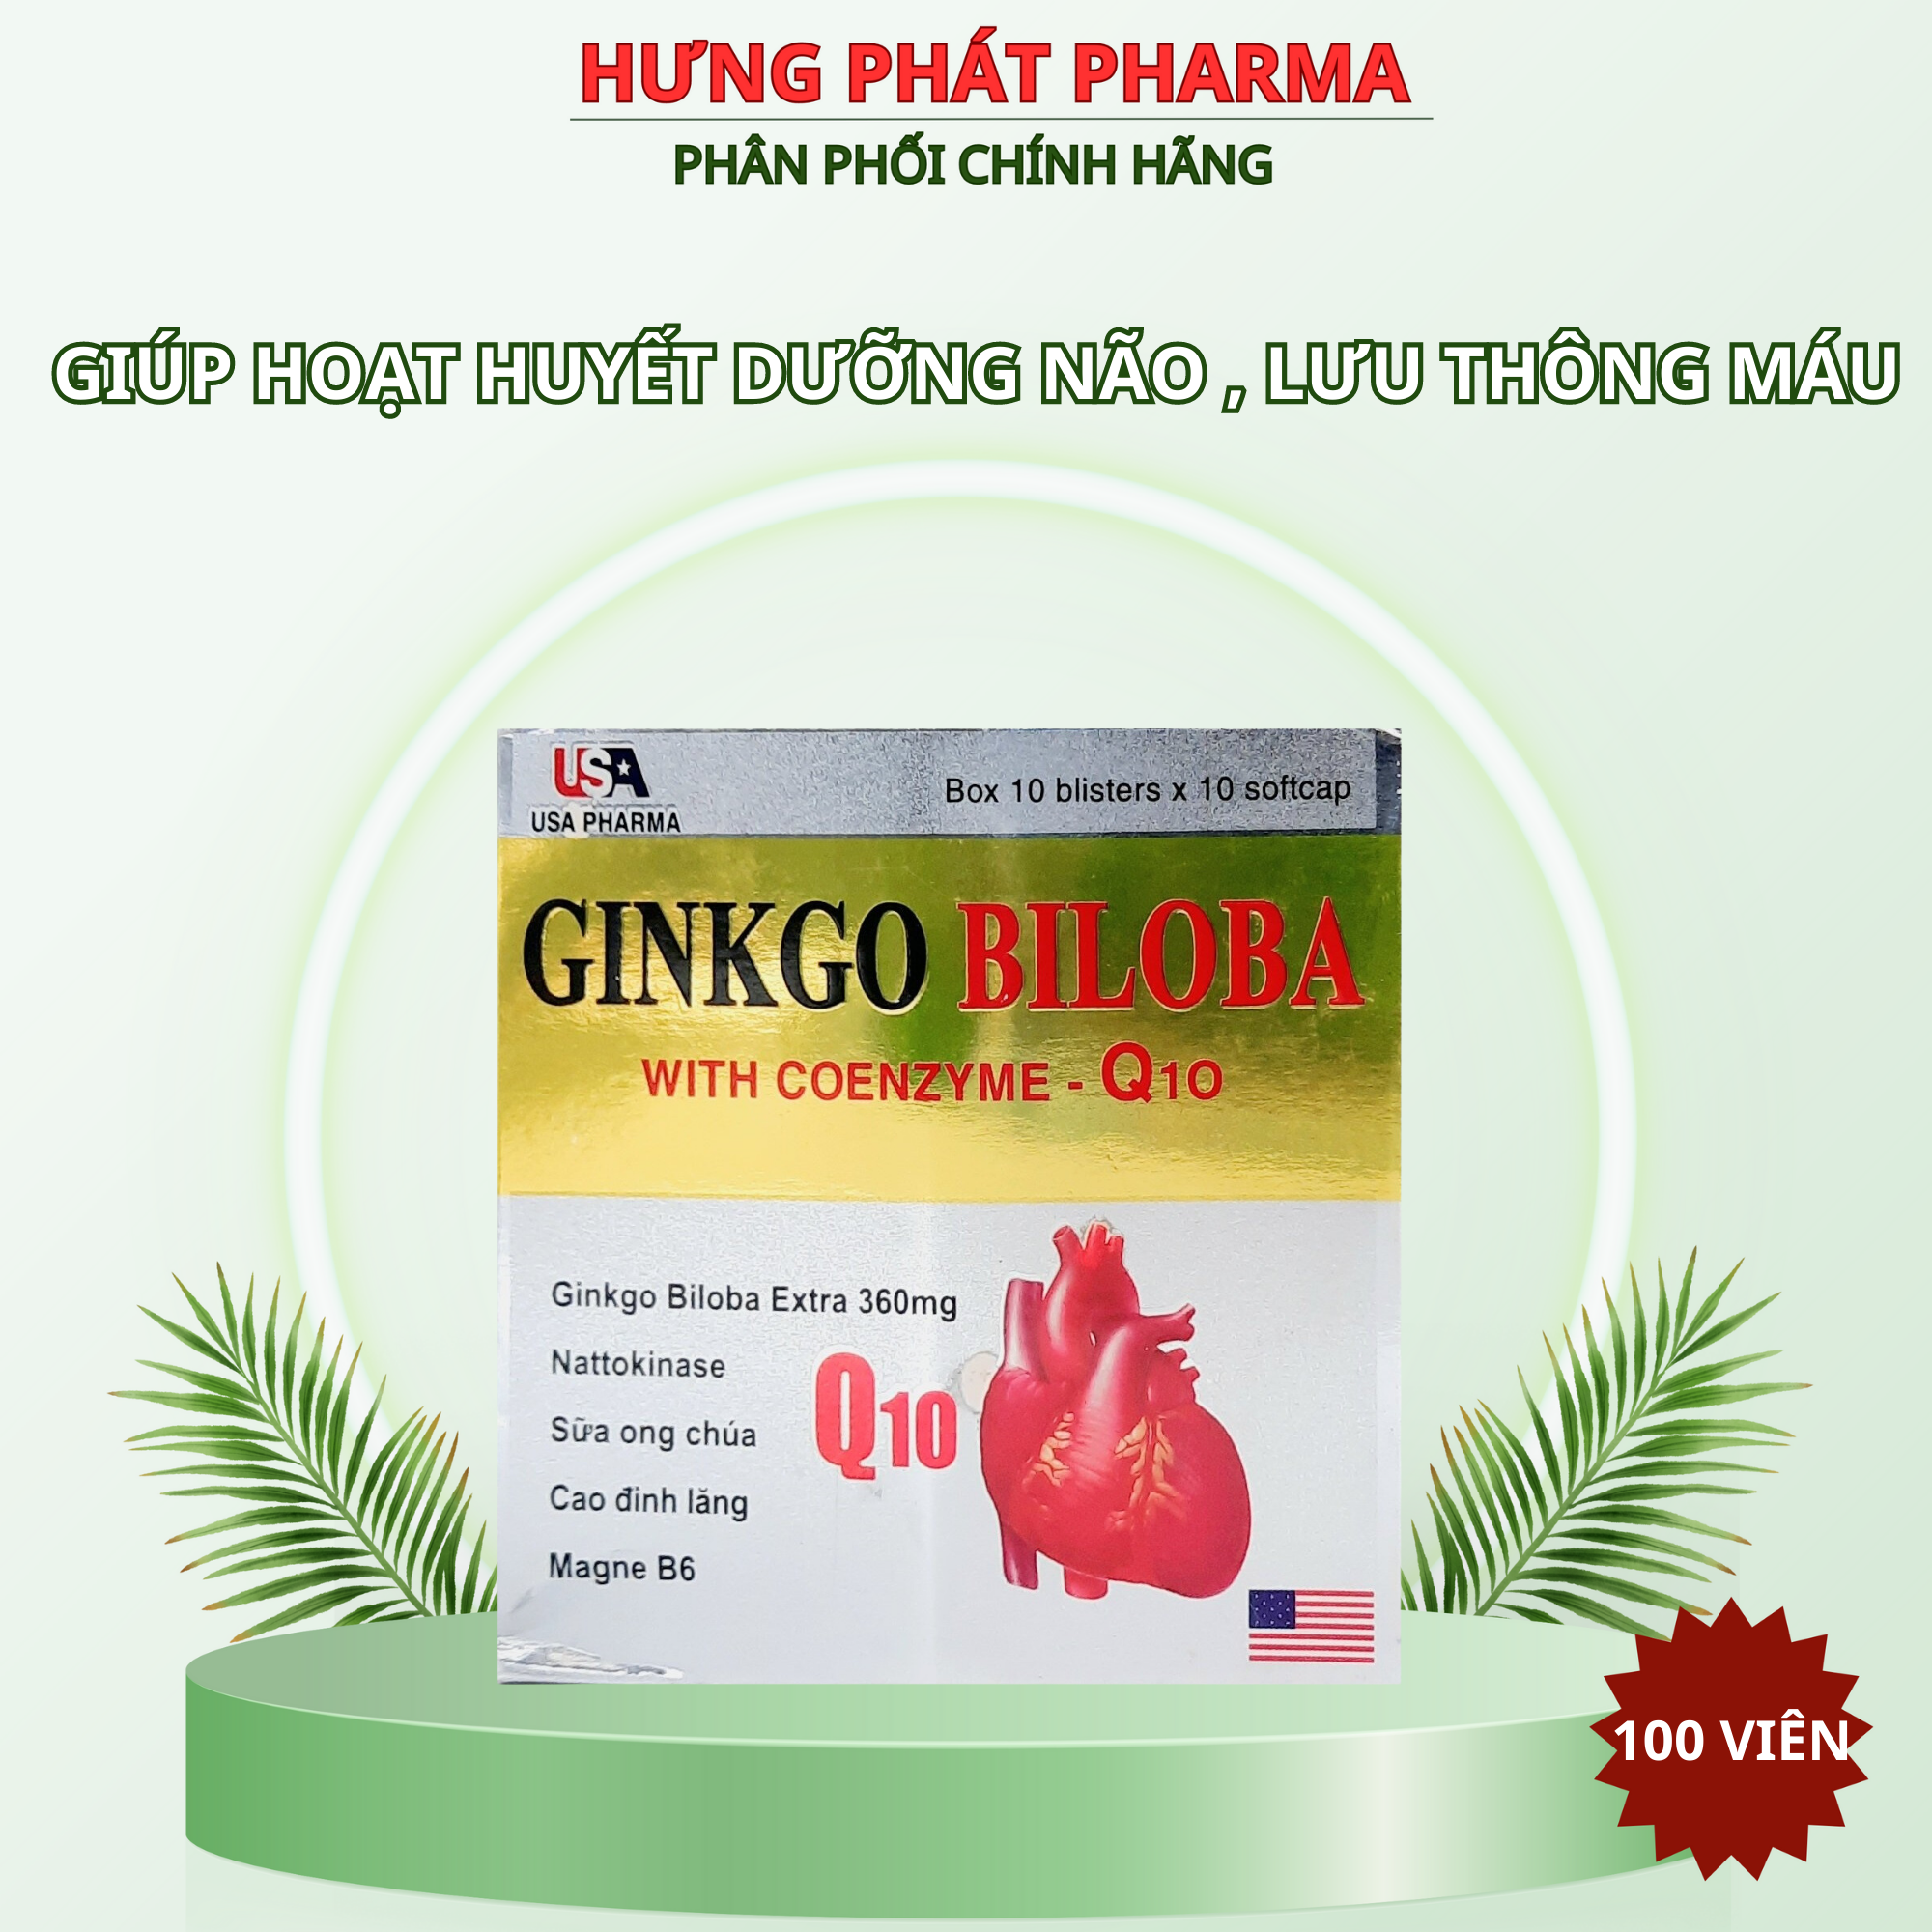 Ginkgo Biloba with Coenzyme- Q10 giúp hoạt huyết dưỡng lão lưu thông máu giảm mệt mỏi – hộp 100 viên